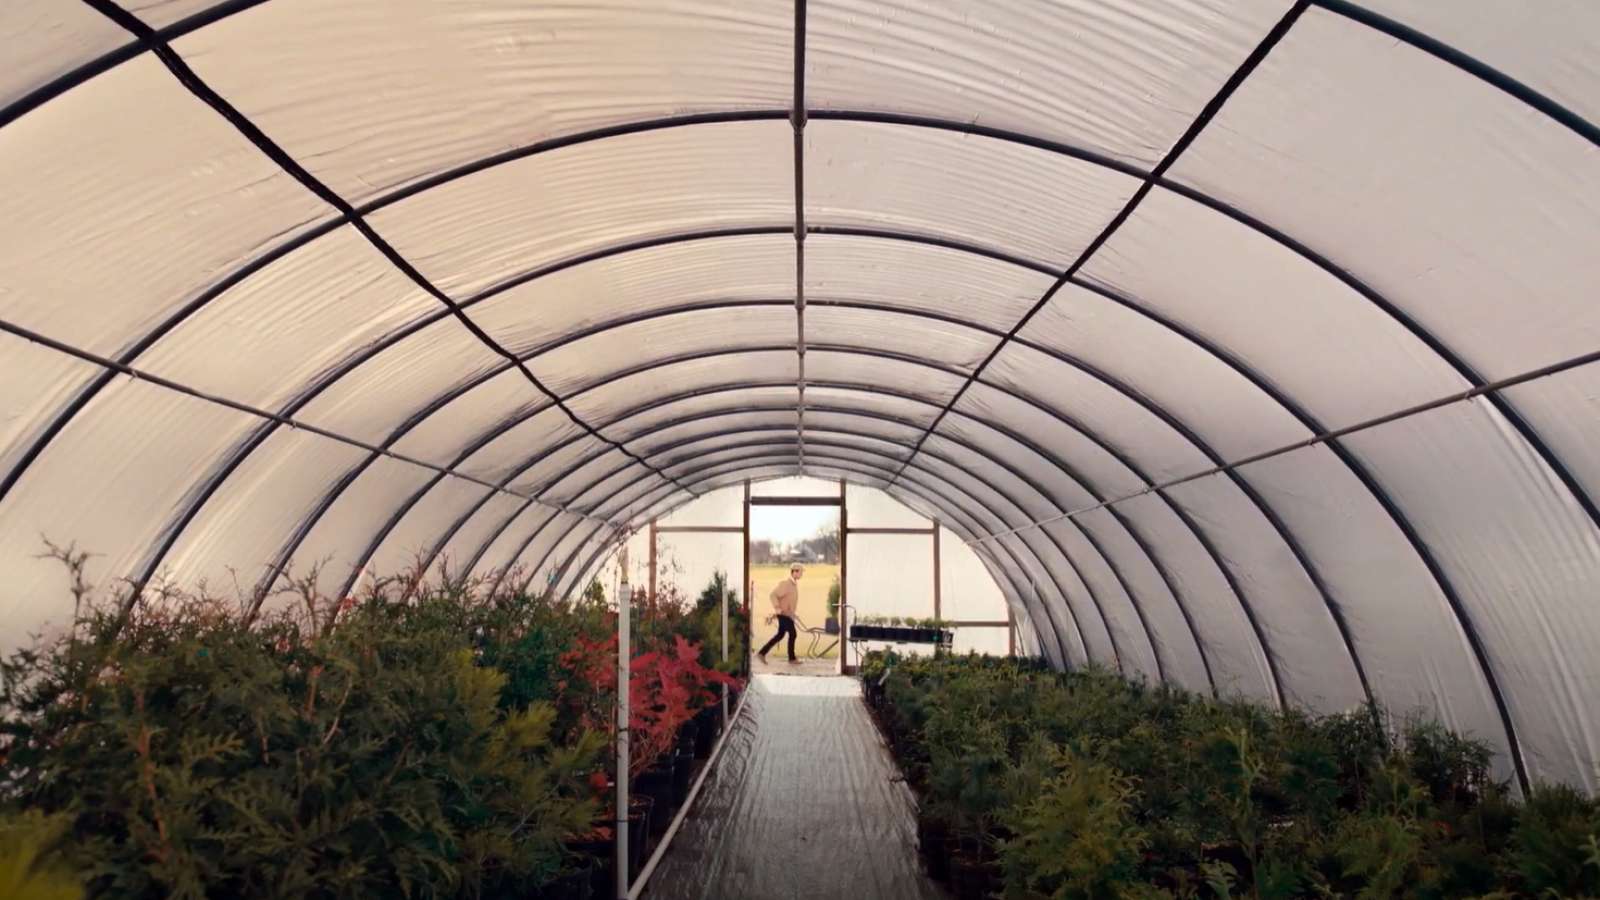 a greenhouse